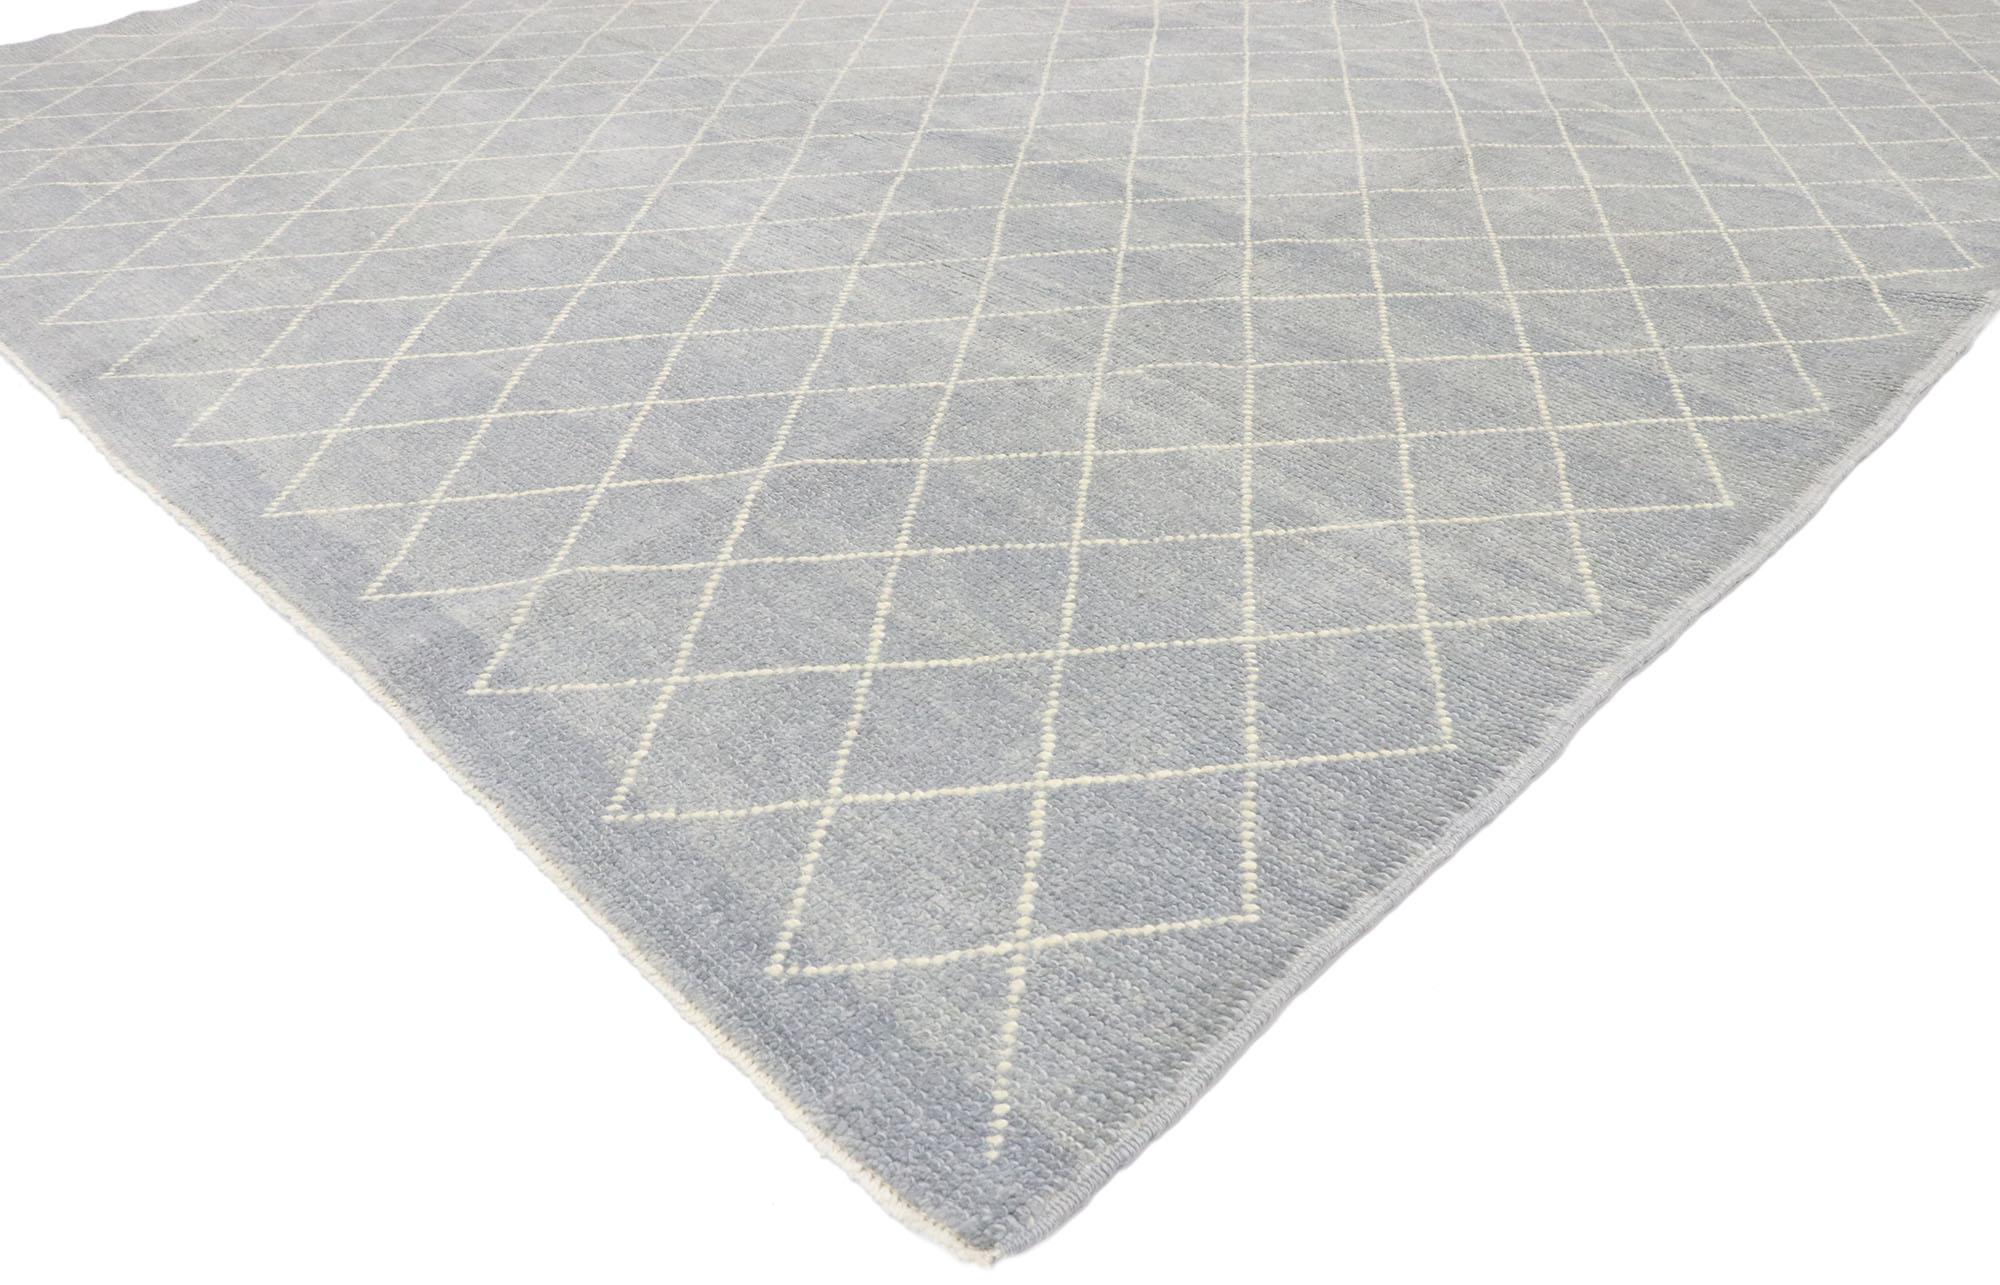 53446, neuer moderner Teppich im marokkanischen Stil mit Diamond Trellis. Dieser moderne marokkanische Teppich aus handgeknüpfter Wolle vereint Schlichtheit mit unglaublichen Details und Texturen. Das abgewetzte hellblau-graue Feld ist mit einem